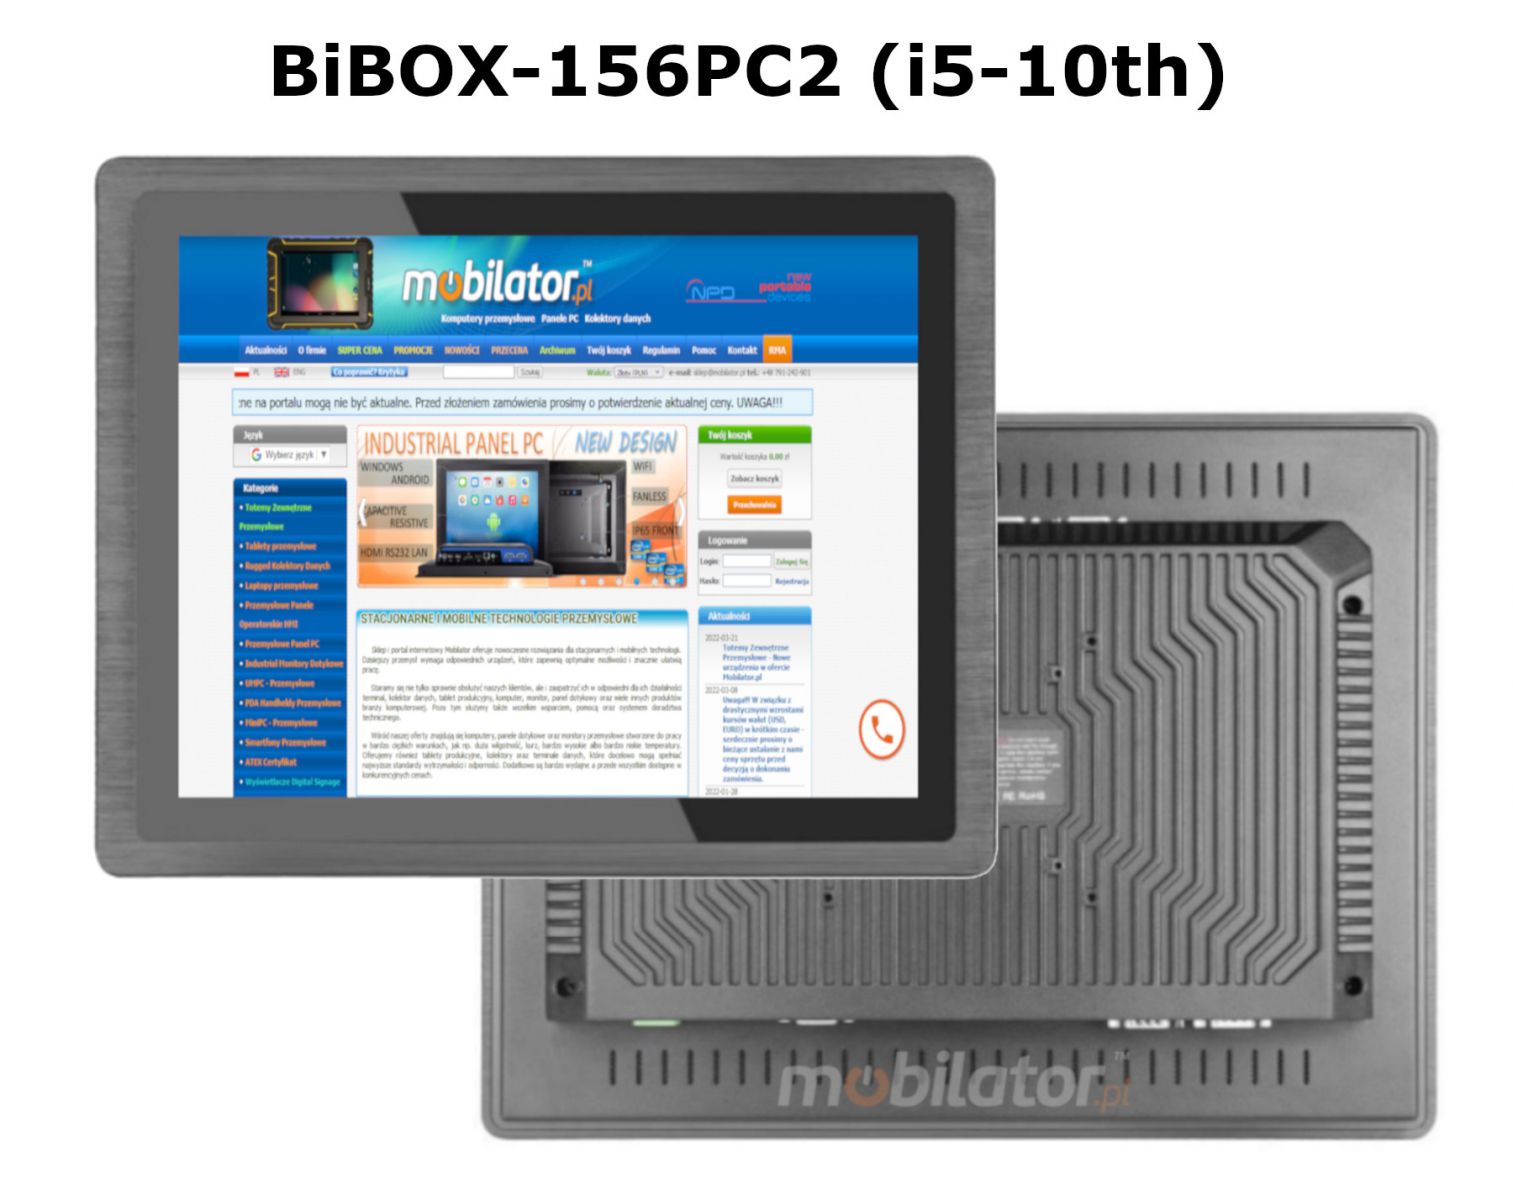 BIBOX-156PC2 odporny dobry wydajny komputer panelowy